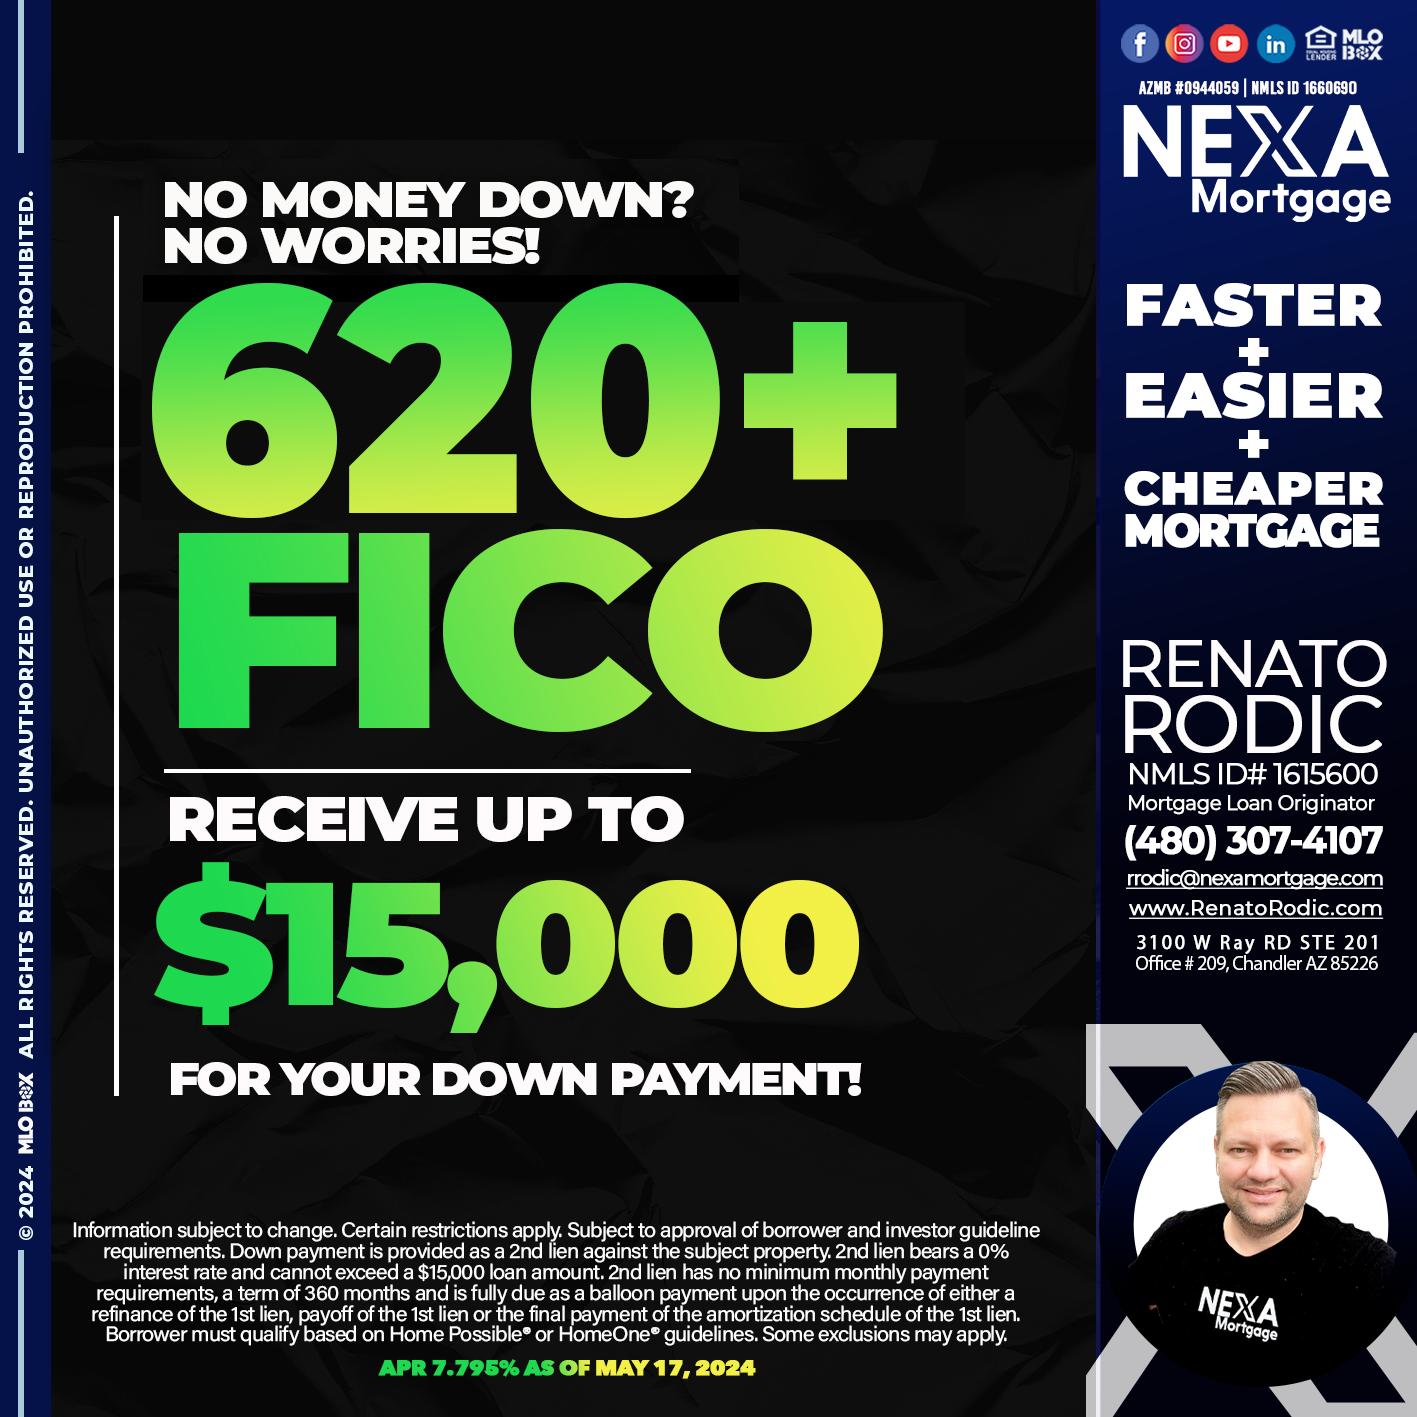 620 FICO - Renato Rodic -Mortgage Loan Originator